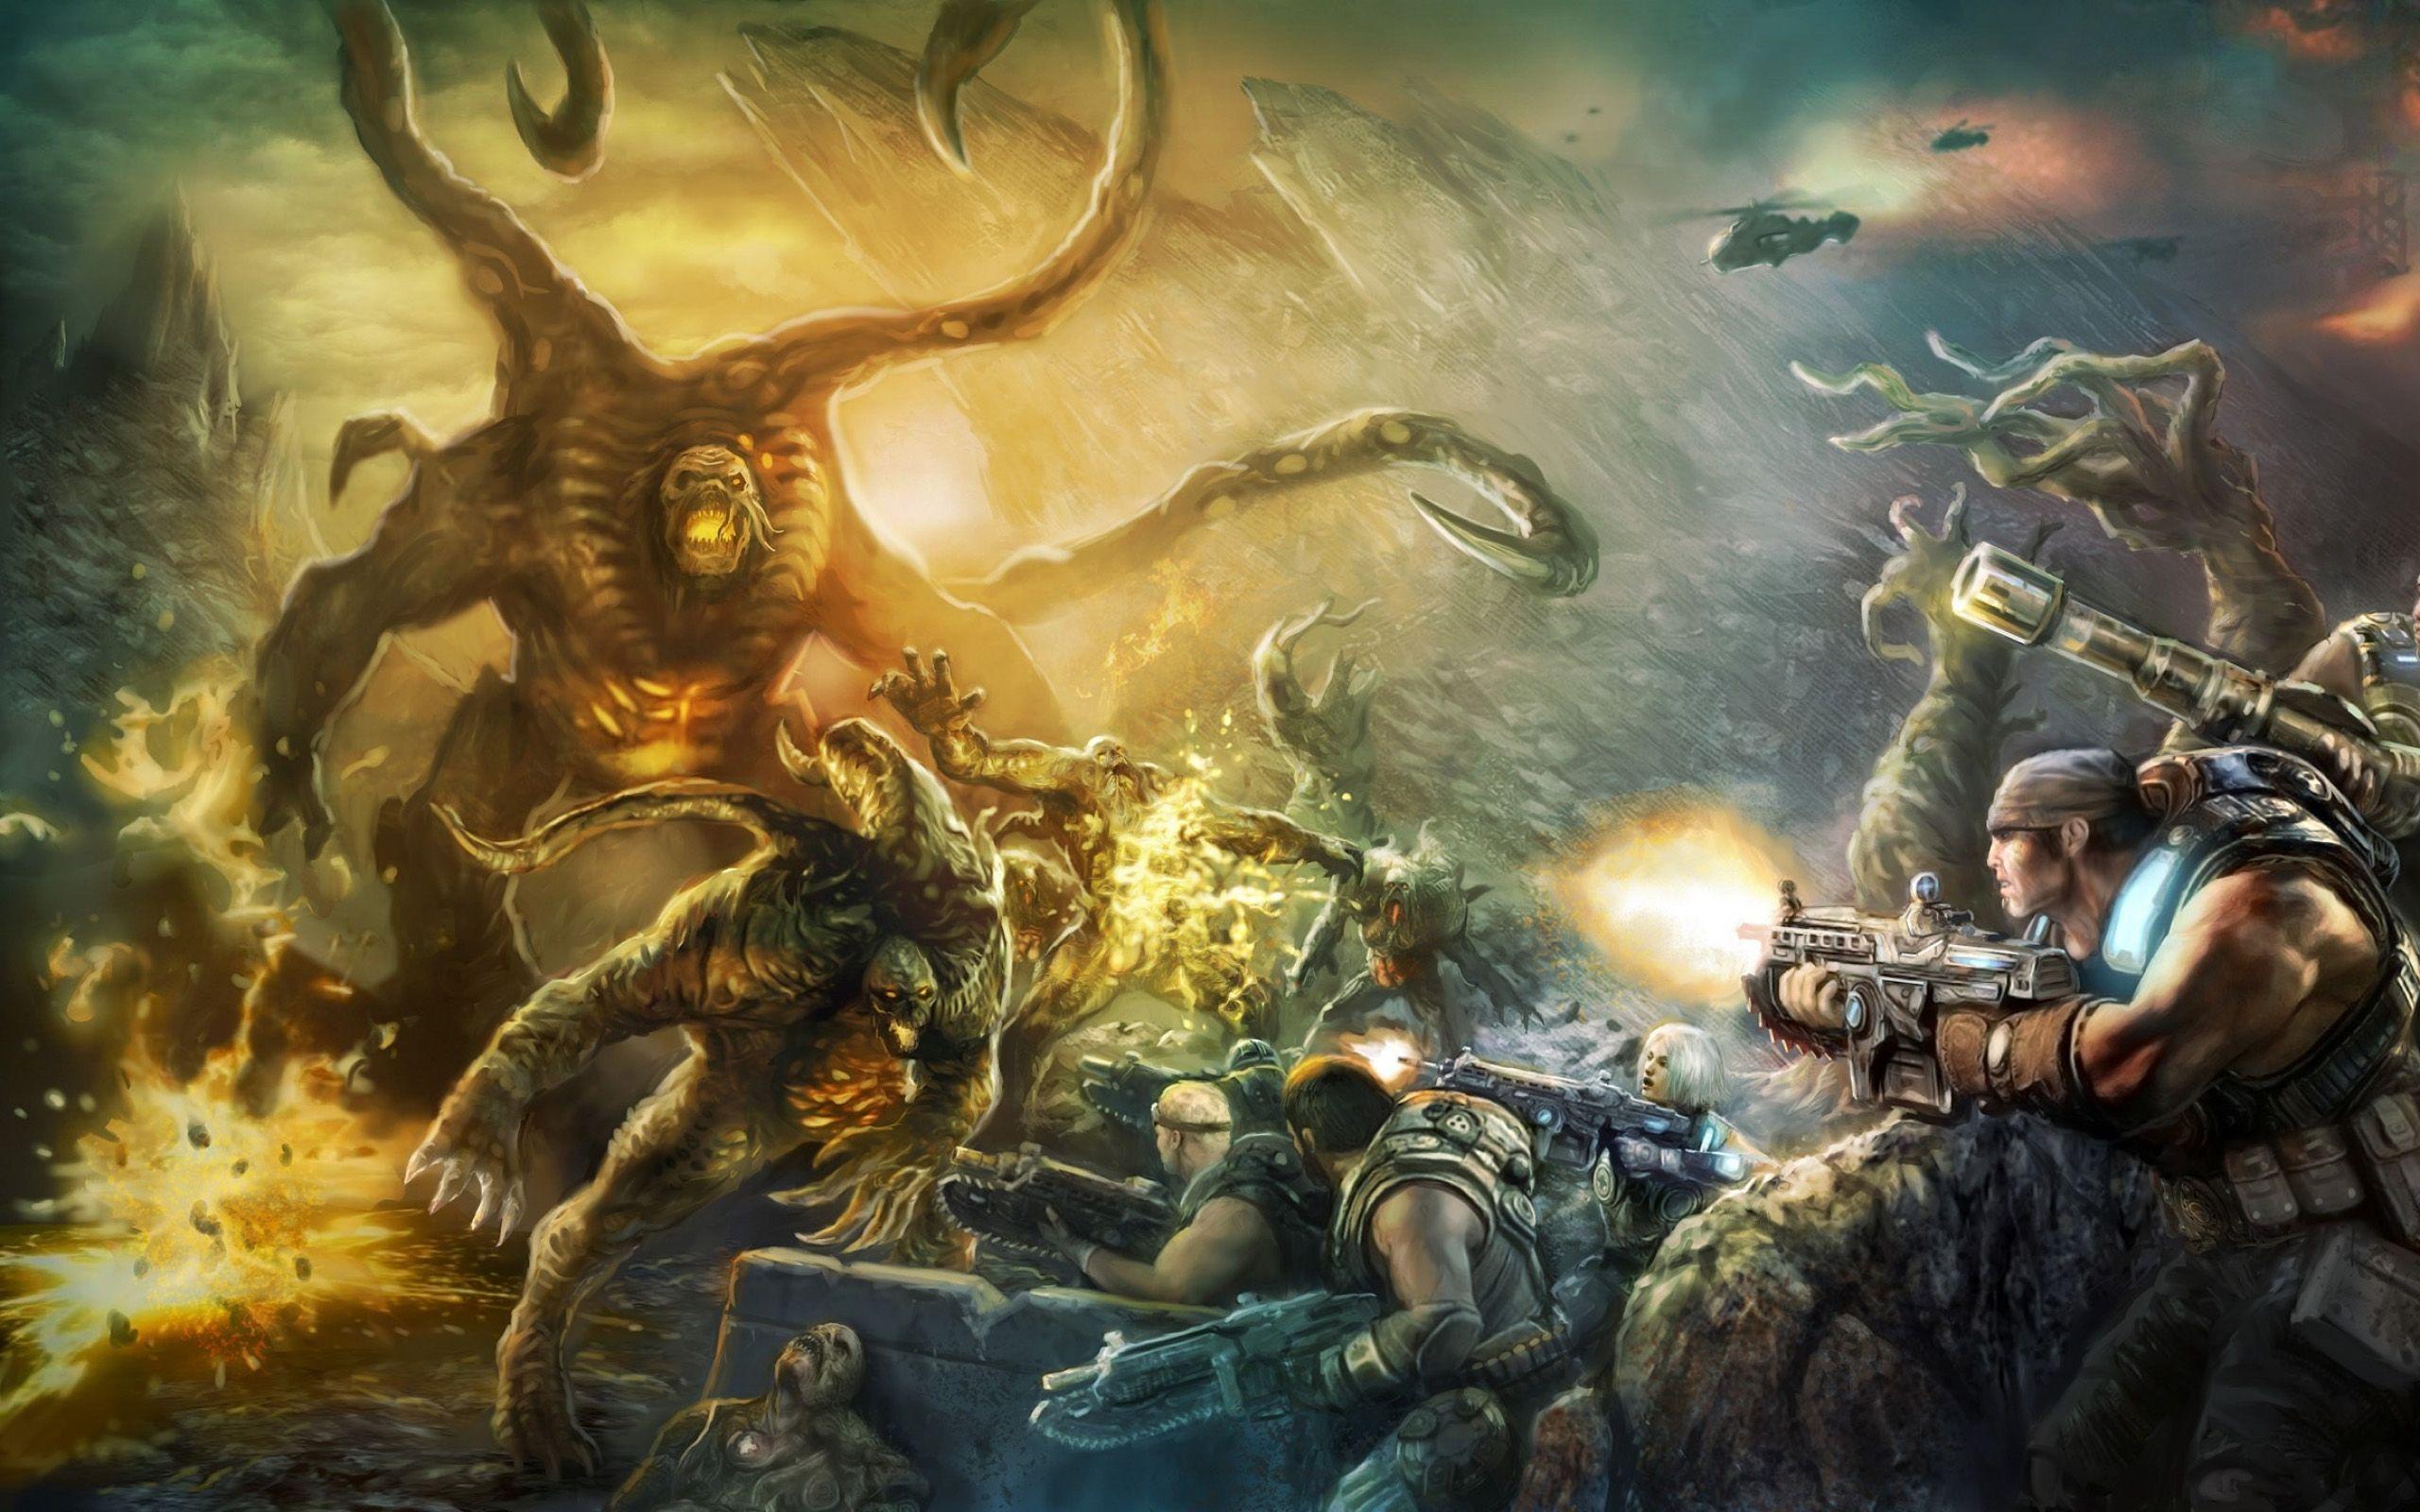 Video Games Gears Of War Wallpaper 2560x1600. Hot HD Wallpaper